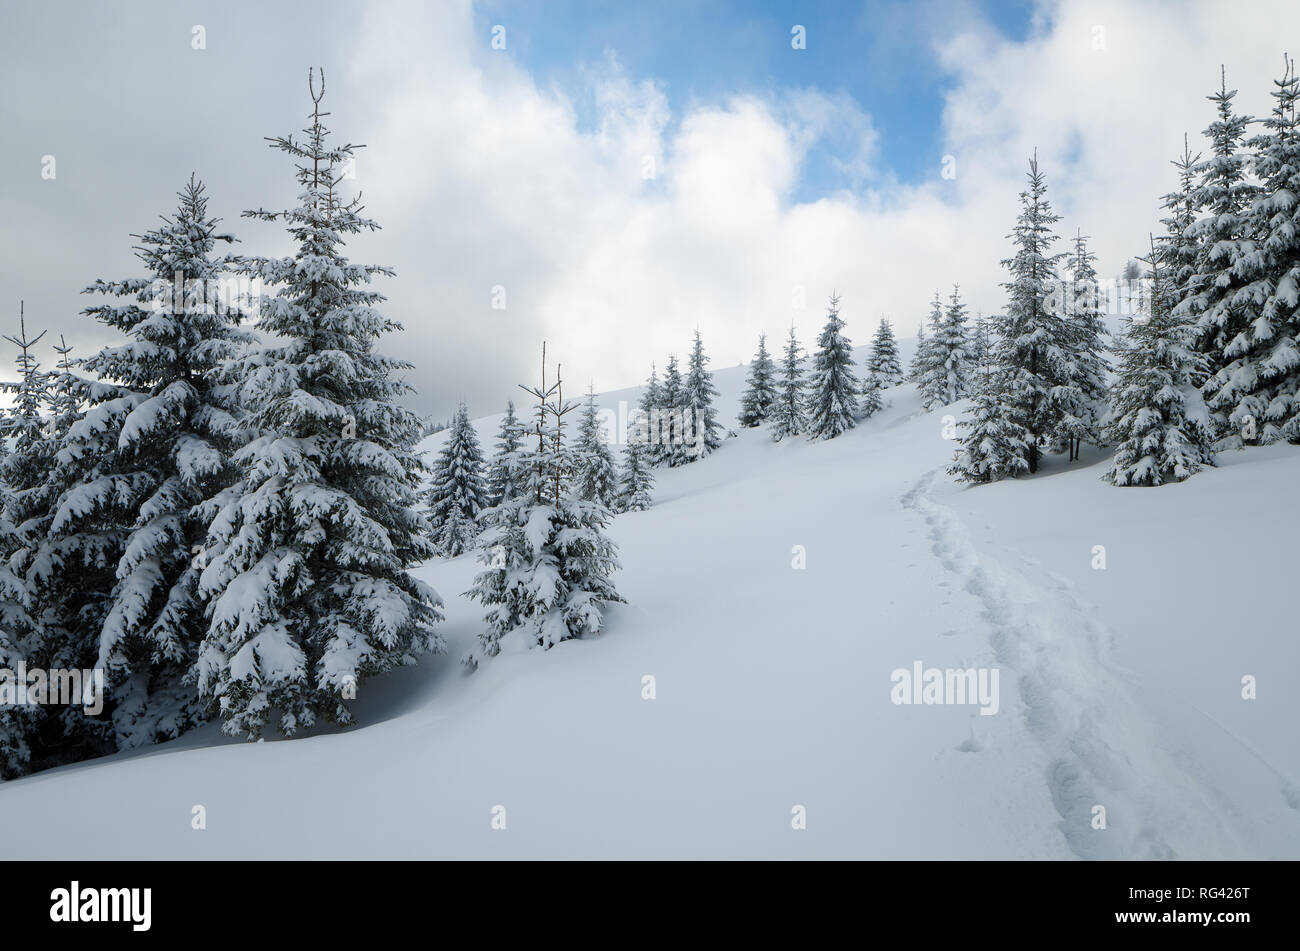 Forêt de sapins enneigés sur une colline. Sentier dans la neige. Journée d'hiver nuageux. Carpates de l'Est, l'Ukraine Banque D'Images